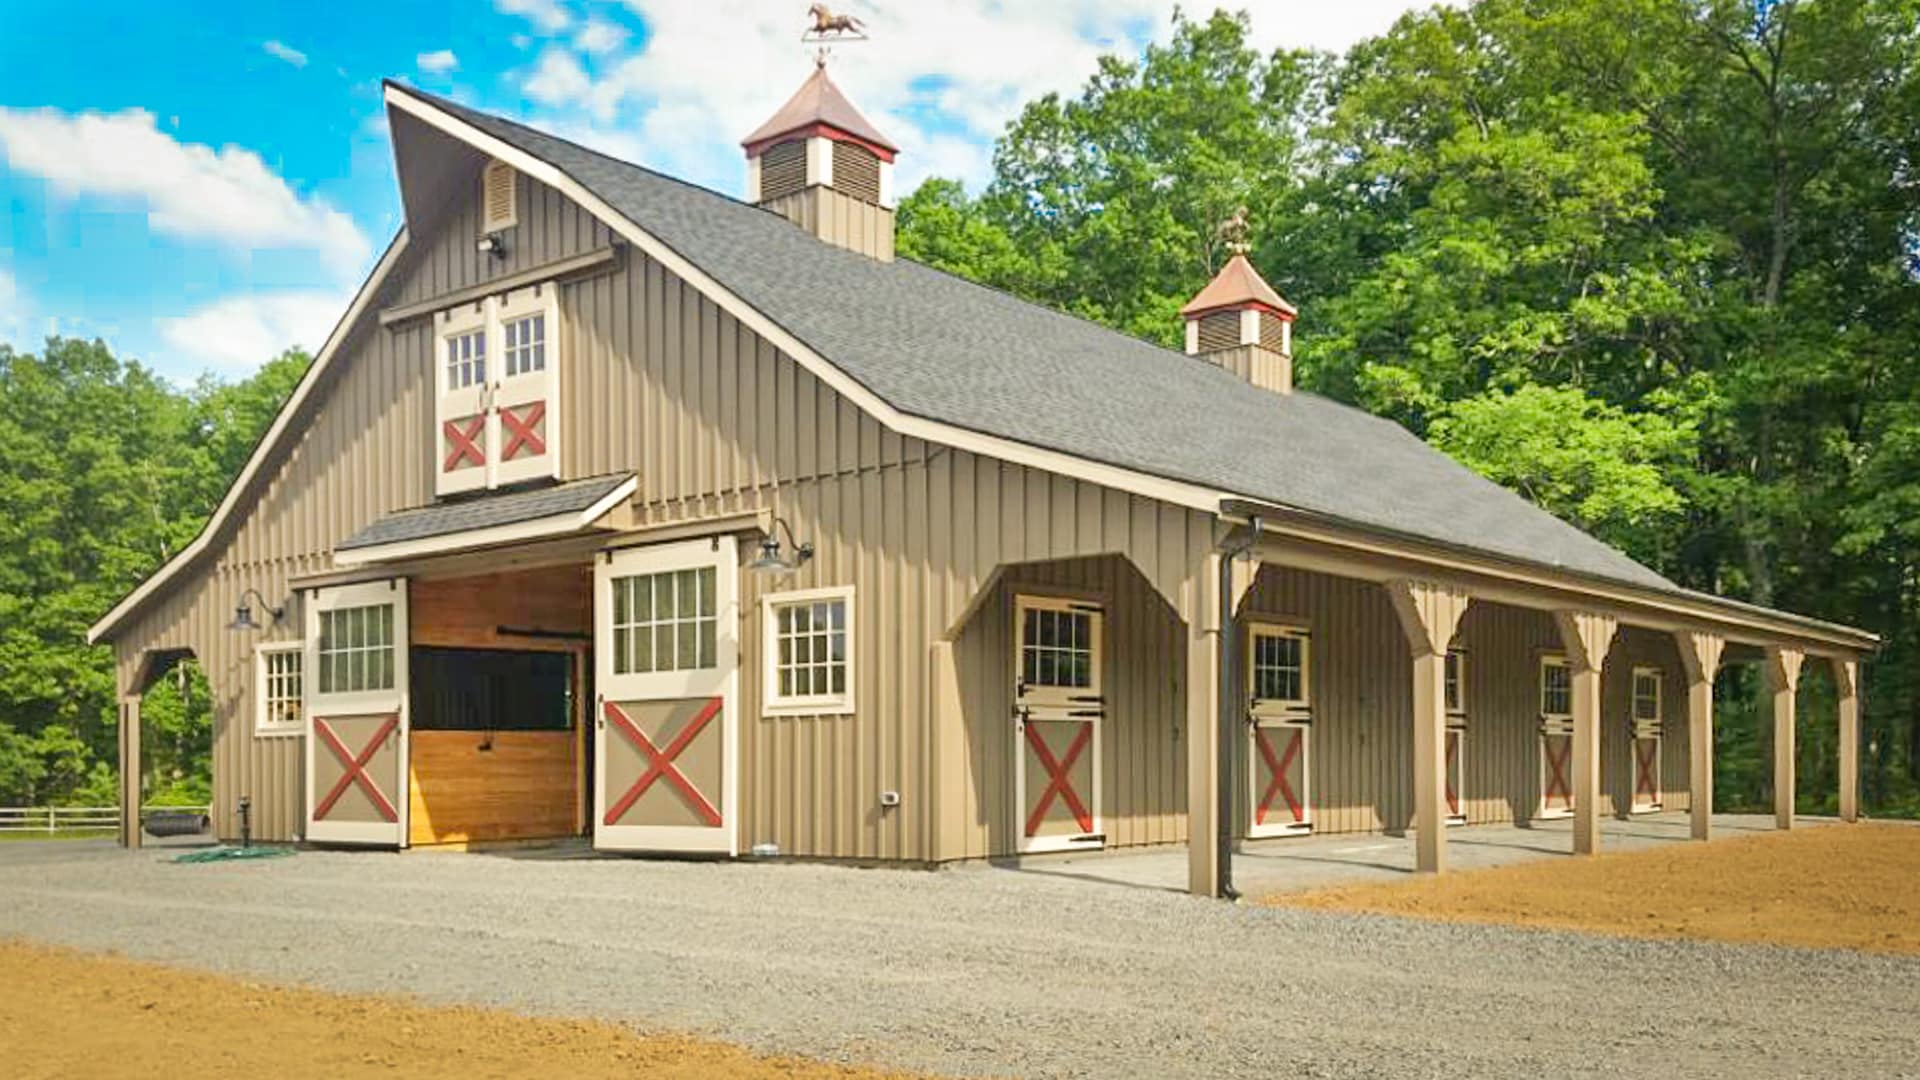 custom horse barns for sale in wytheville va